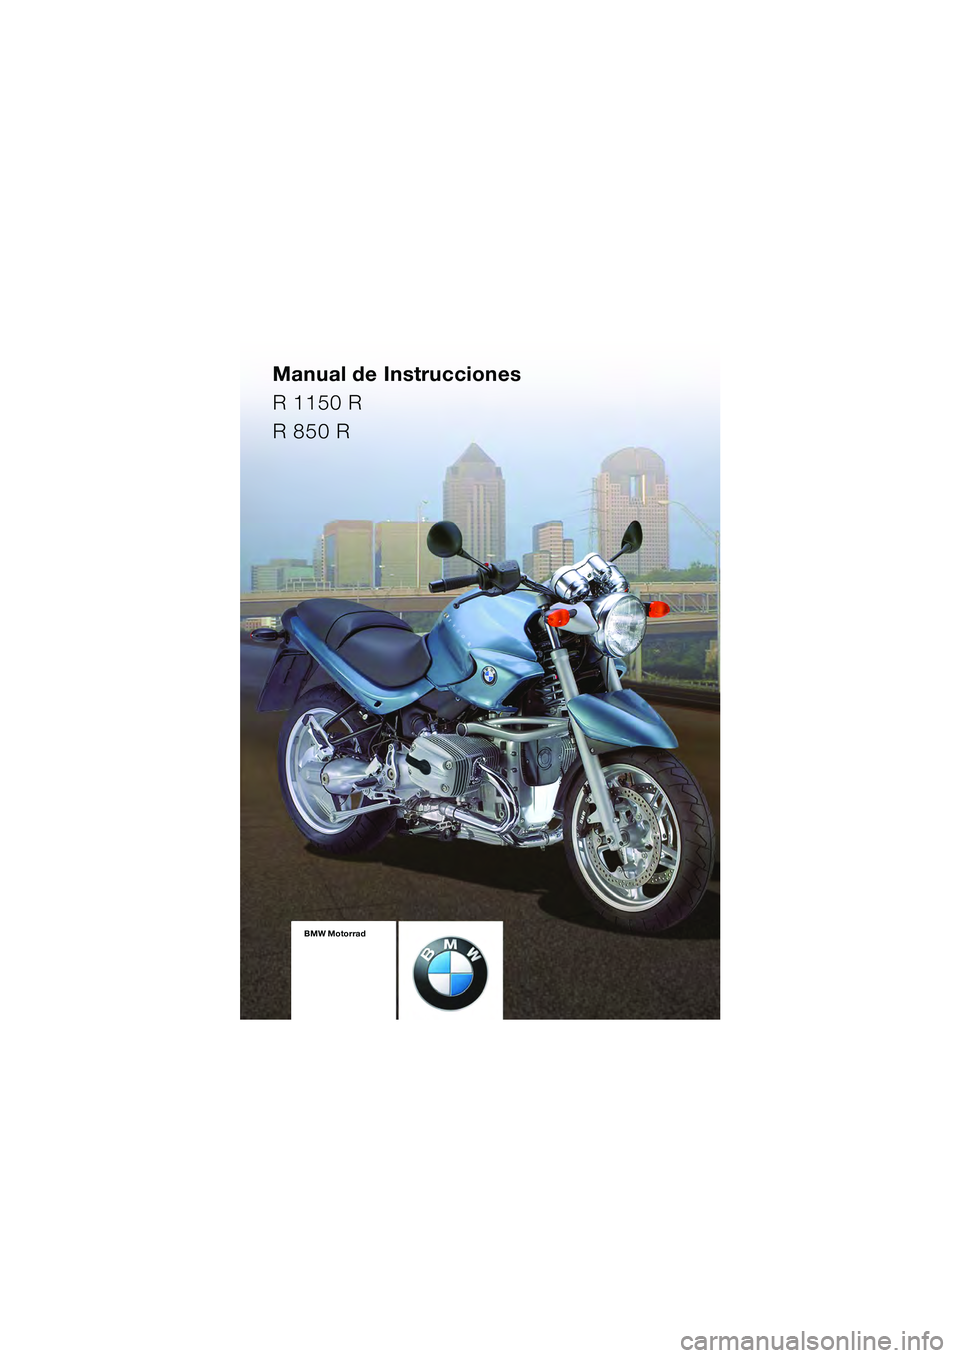 BMW MOTORRAD R 1150 R 2004  Manual de instrucciones (in Spanish) Manual de Instrucciones
R 1150 R
R 850 R
BMW Motorrad
10r28bke3.book  Seite 89  Dienstag, 25. Mai 2004  5:58 17 